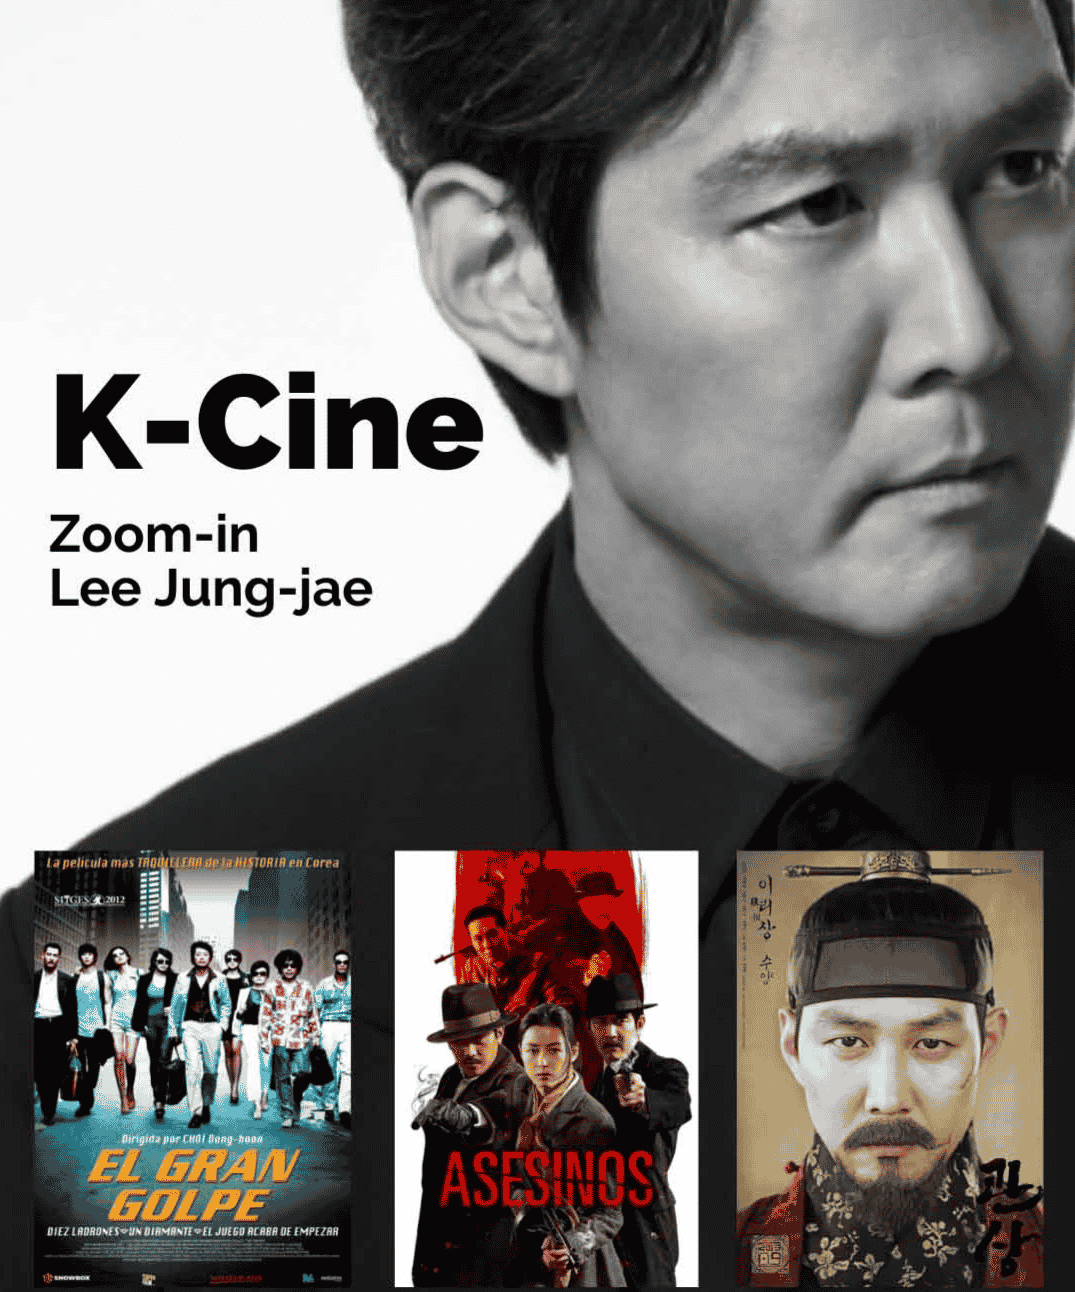 Poster publicitario de la proyección de K-Cine zoom-in Lee Jung-jae